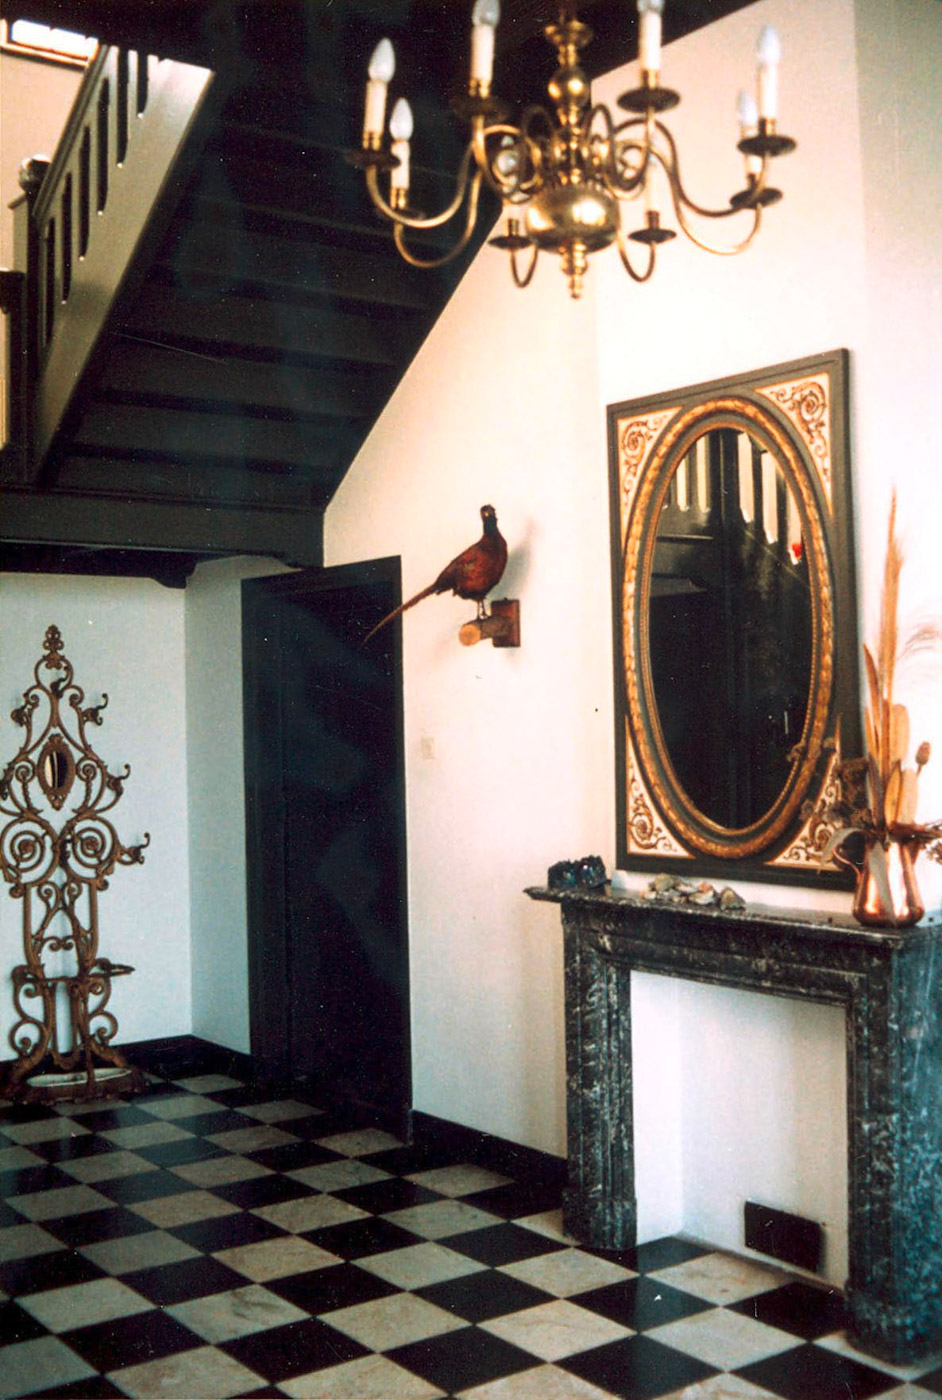 Interieur van de borg met rechts een schouwombouw met daarboven een mooi versierde spiegel en een kroonluchter. Links de trap omhoog.